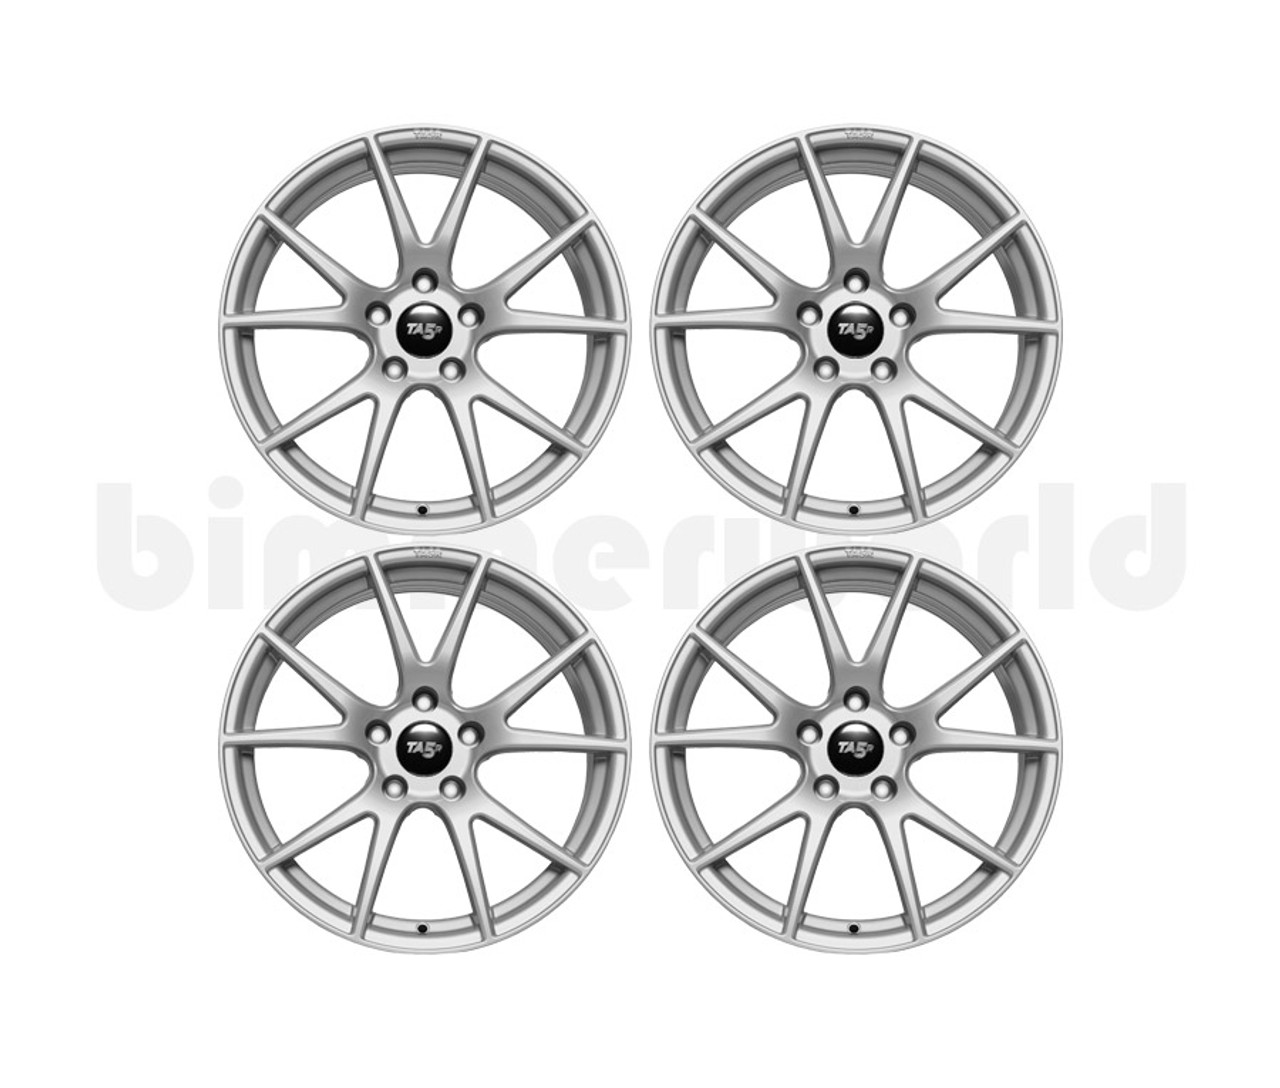 BimmerWorld 18x9.0 TA5R Wheel Set - E9X, F30, F32, E89 Z4  - Silver